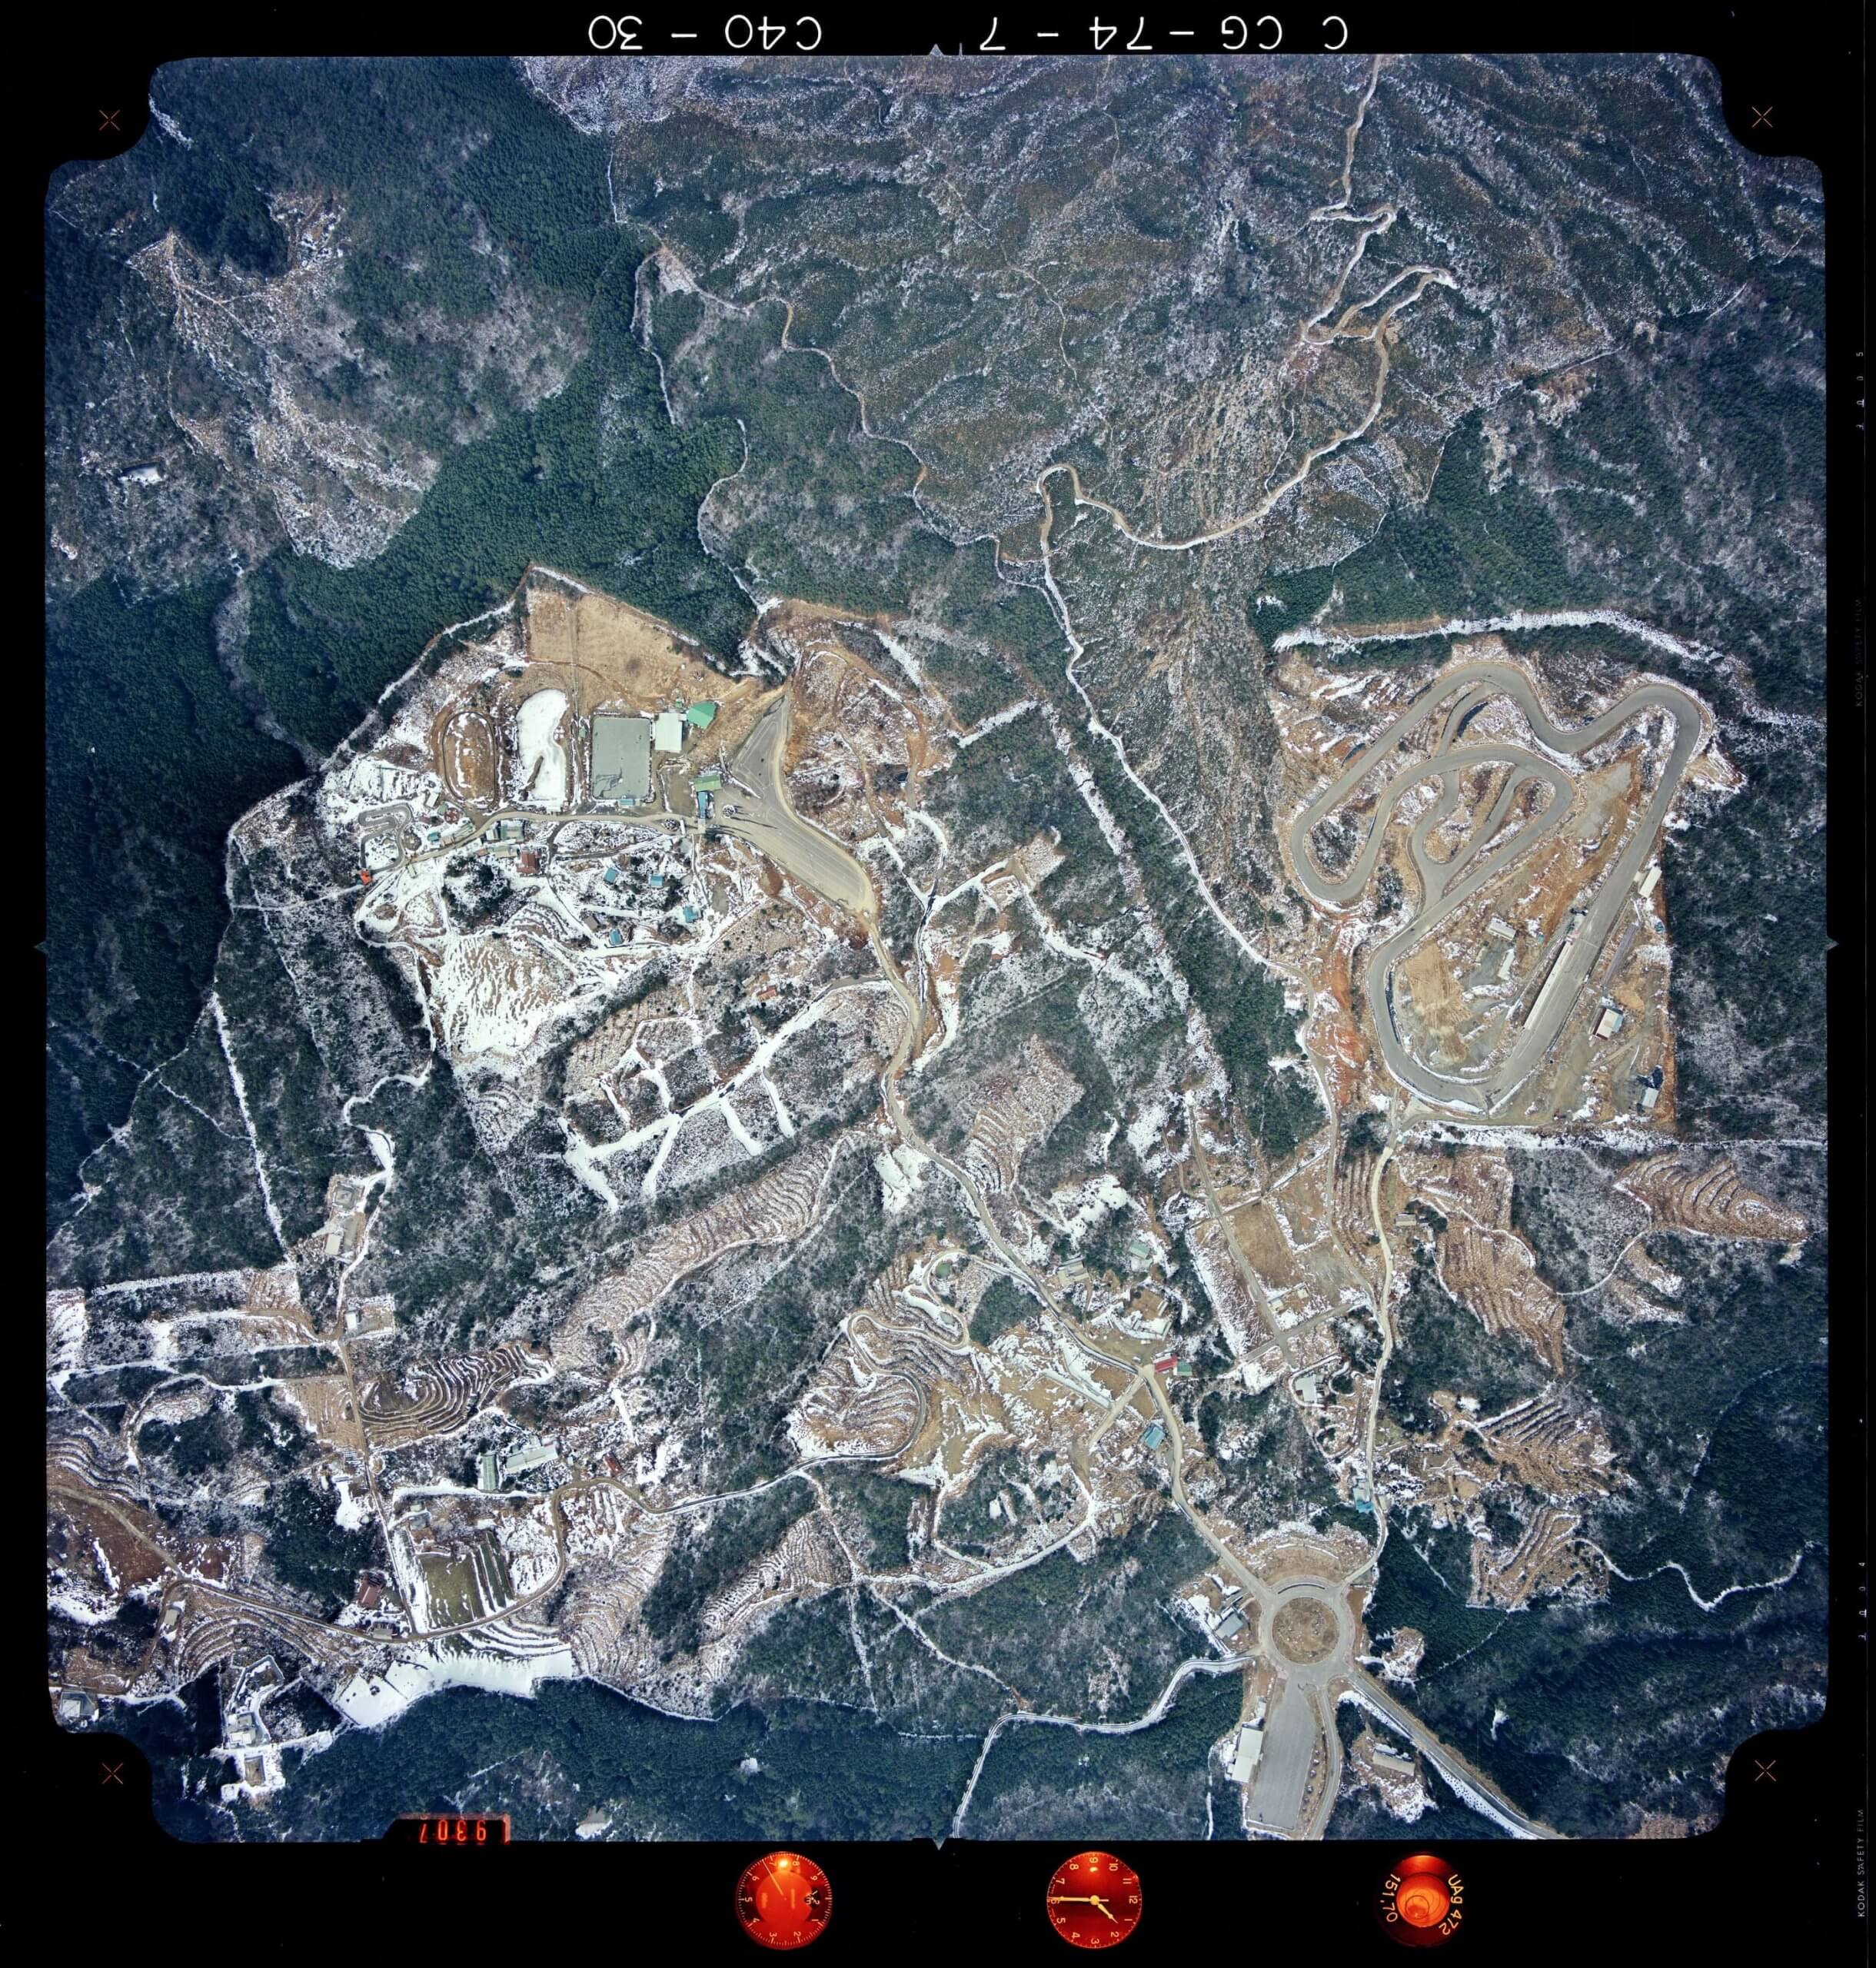 1975年1月31日撮影の航空写真。サーキットや遊園地の遊具が確認できる　出典：国土地理院